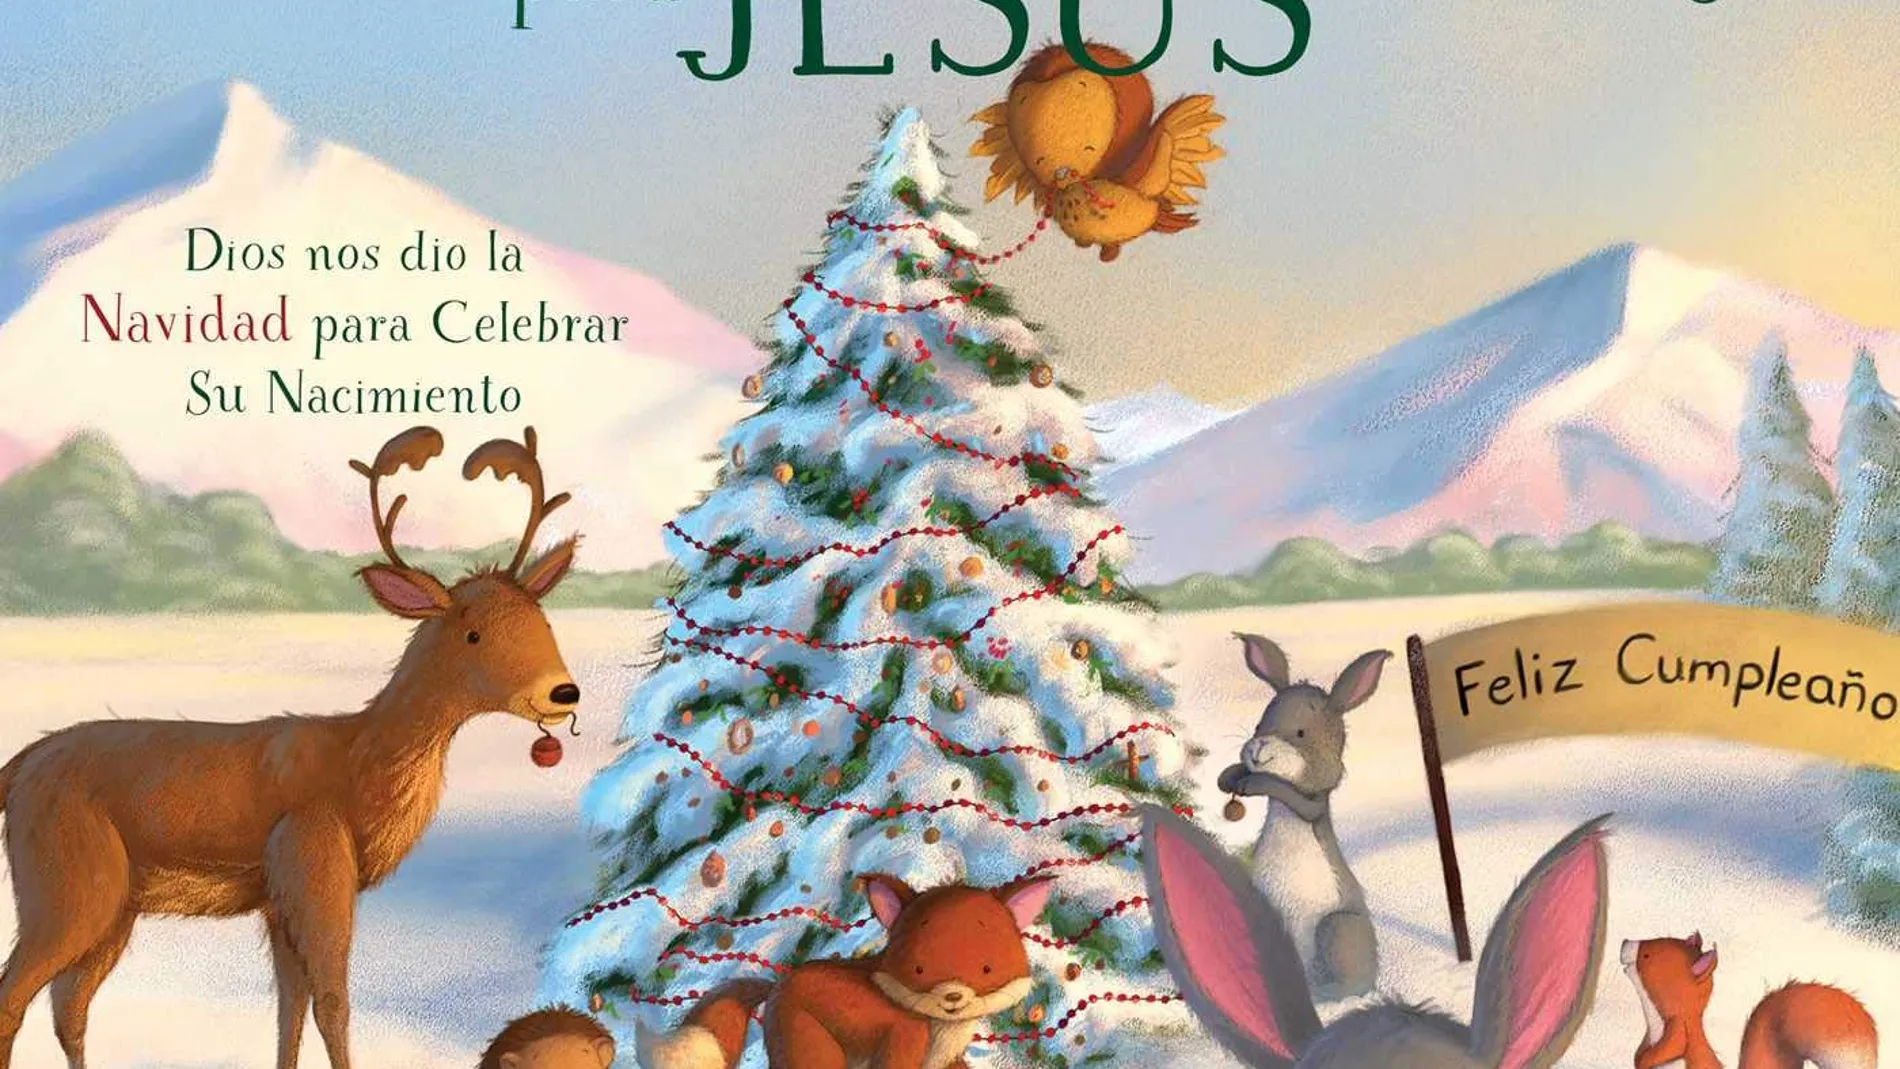 Cuento sobre el nacimiento de Jesús para vivir la Navidad como un cristiano